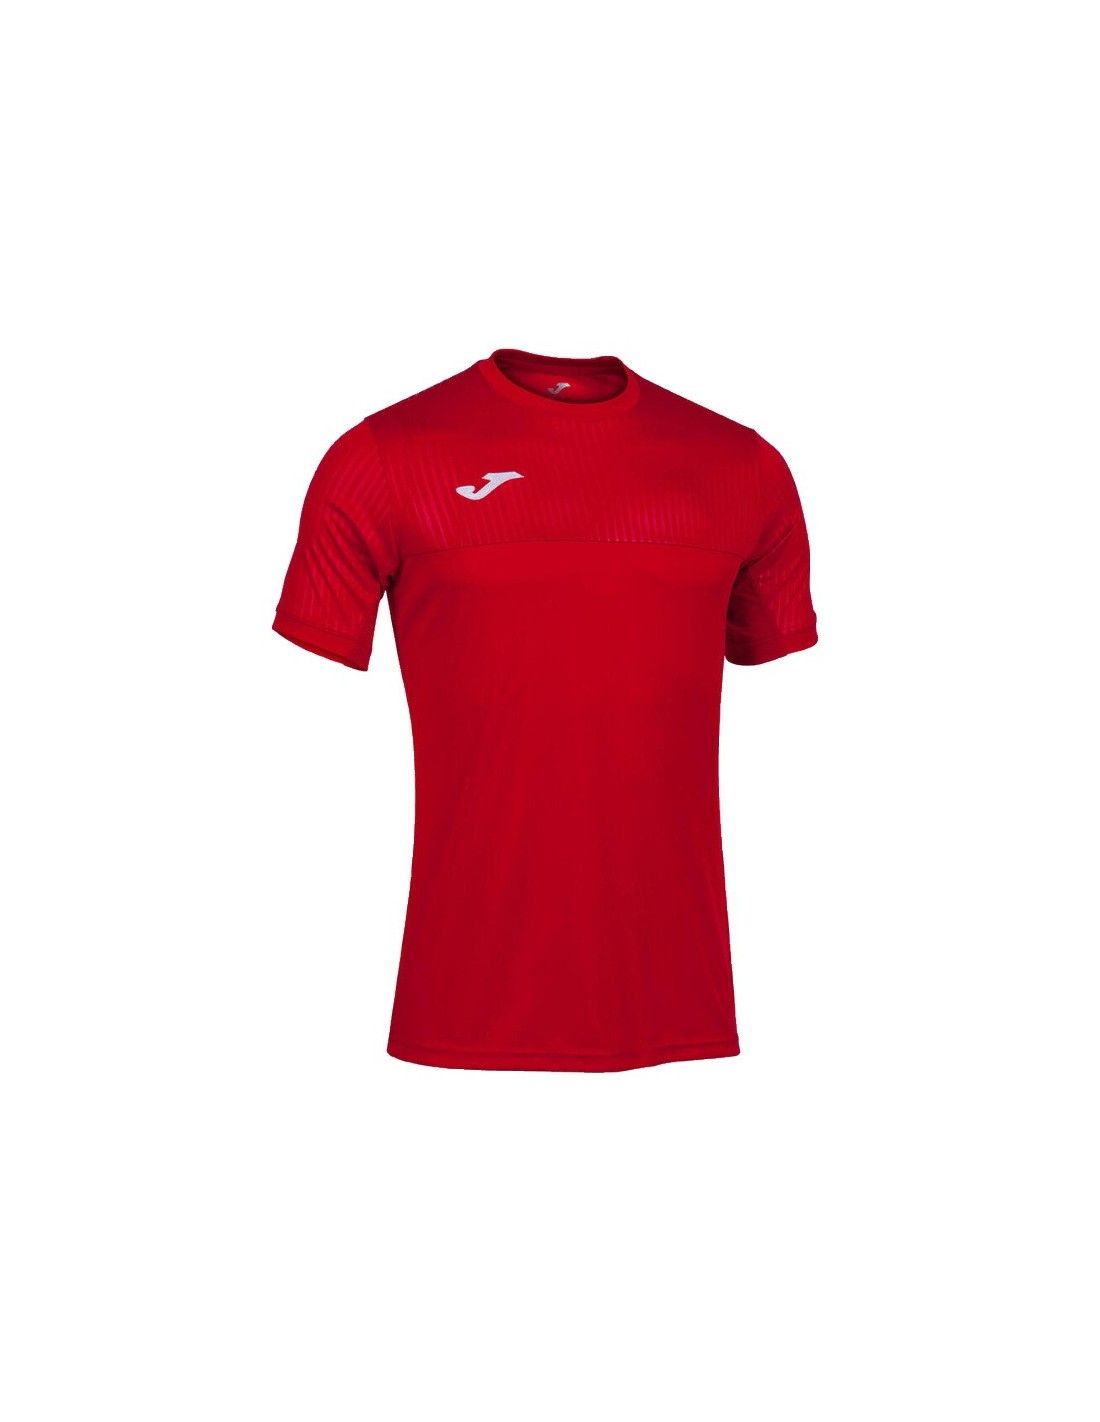 JOMA - Camiseta roja Combi Hombre